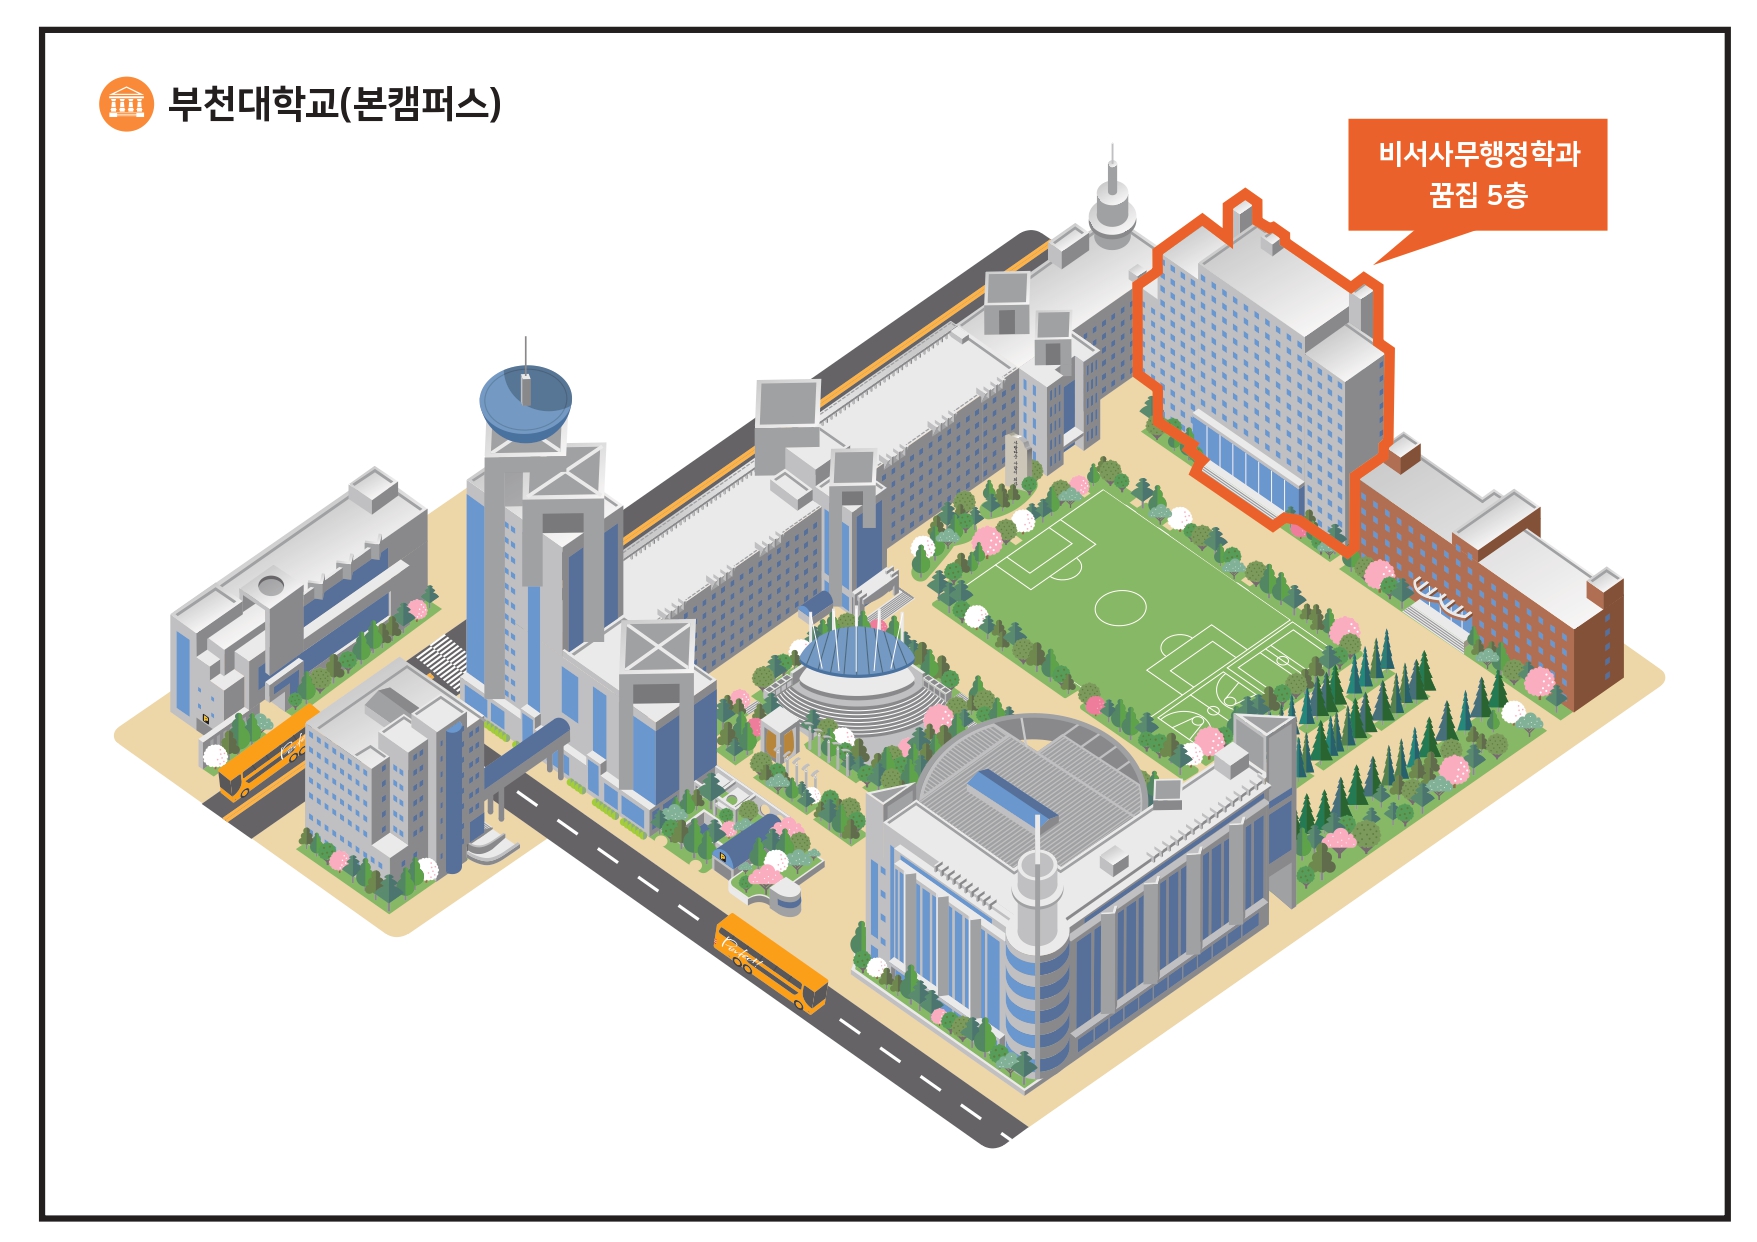 부천대학교(본캠퍼스) 비서사무행정과 꿈집 5층